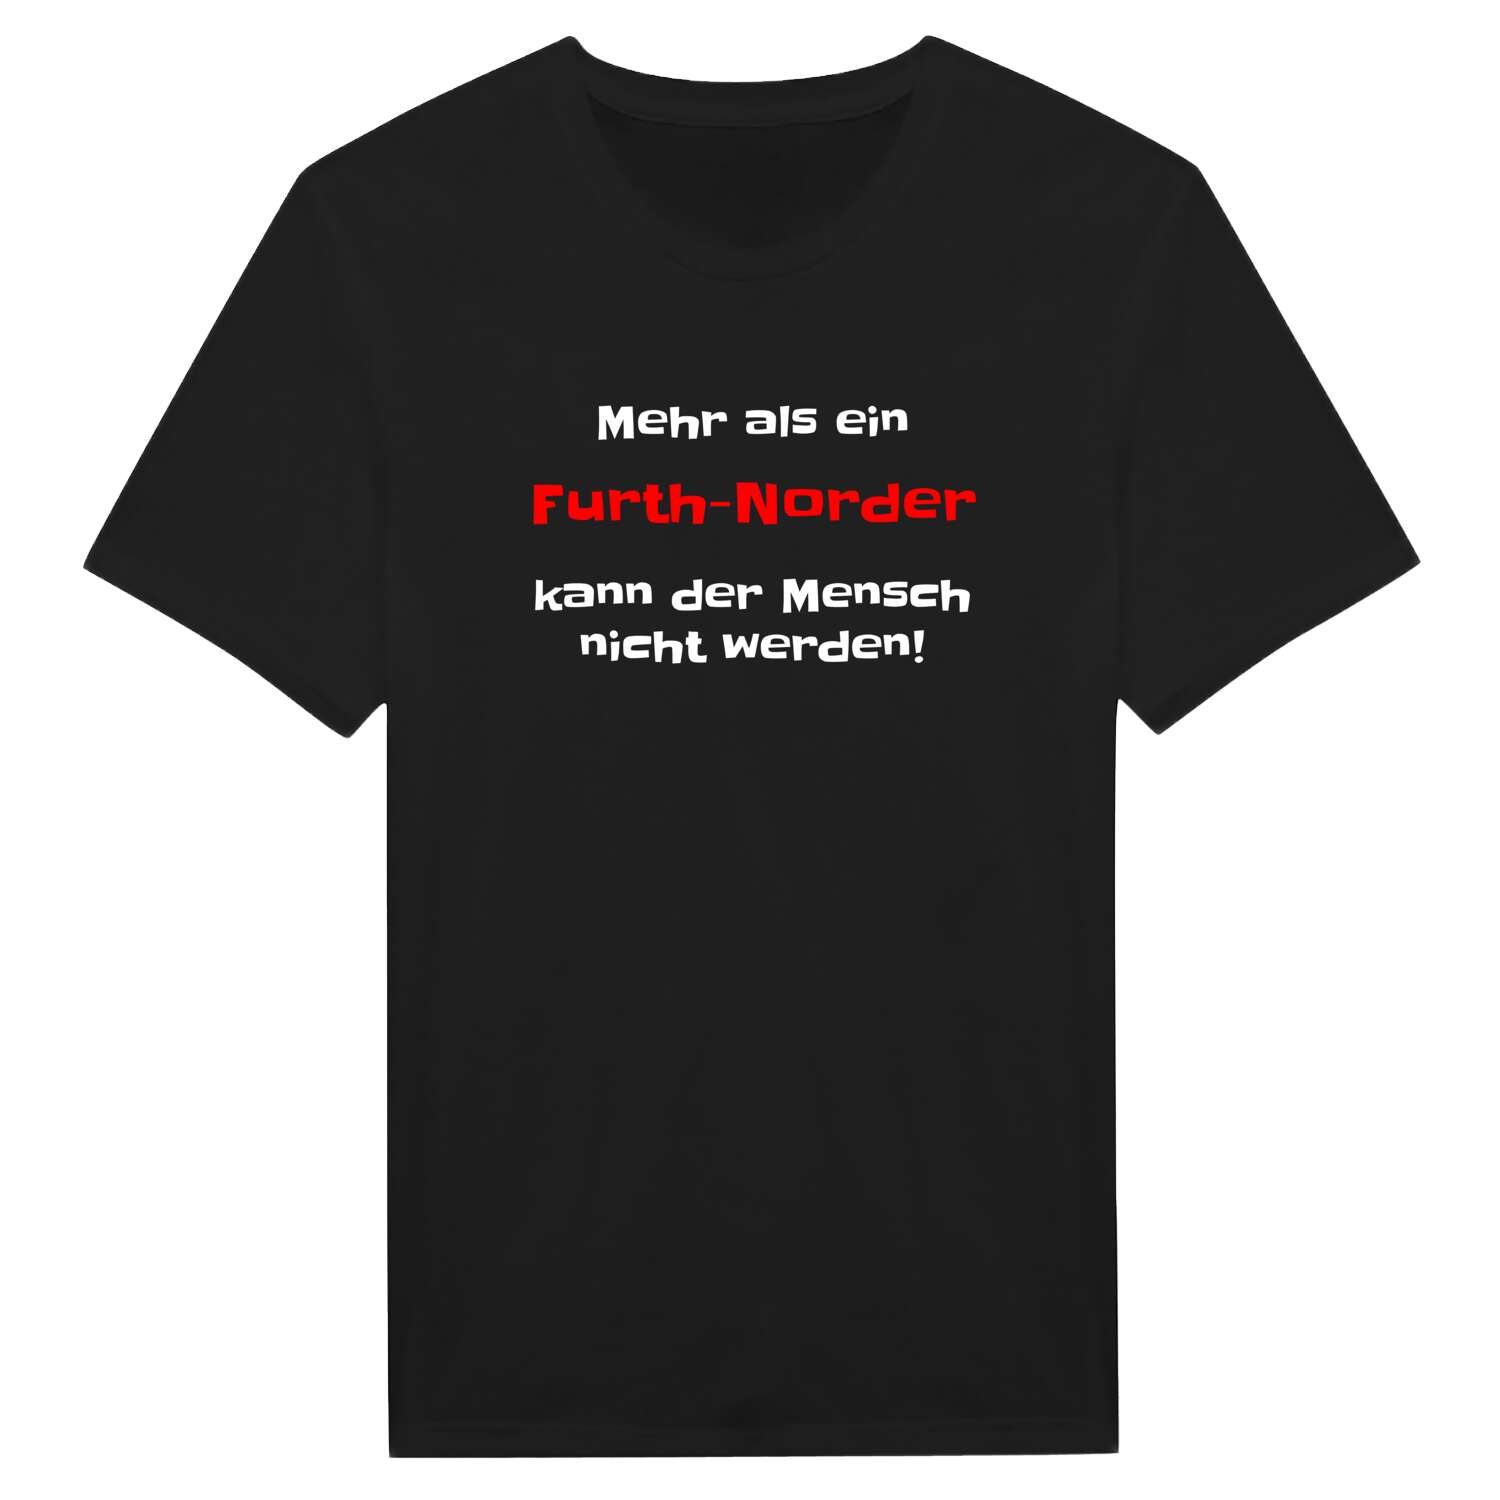 Furth-Nord T-Shirt »Mehr als ein«